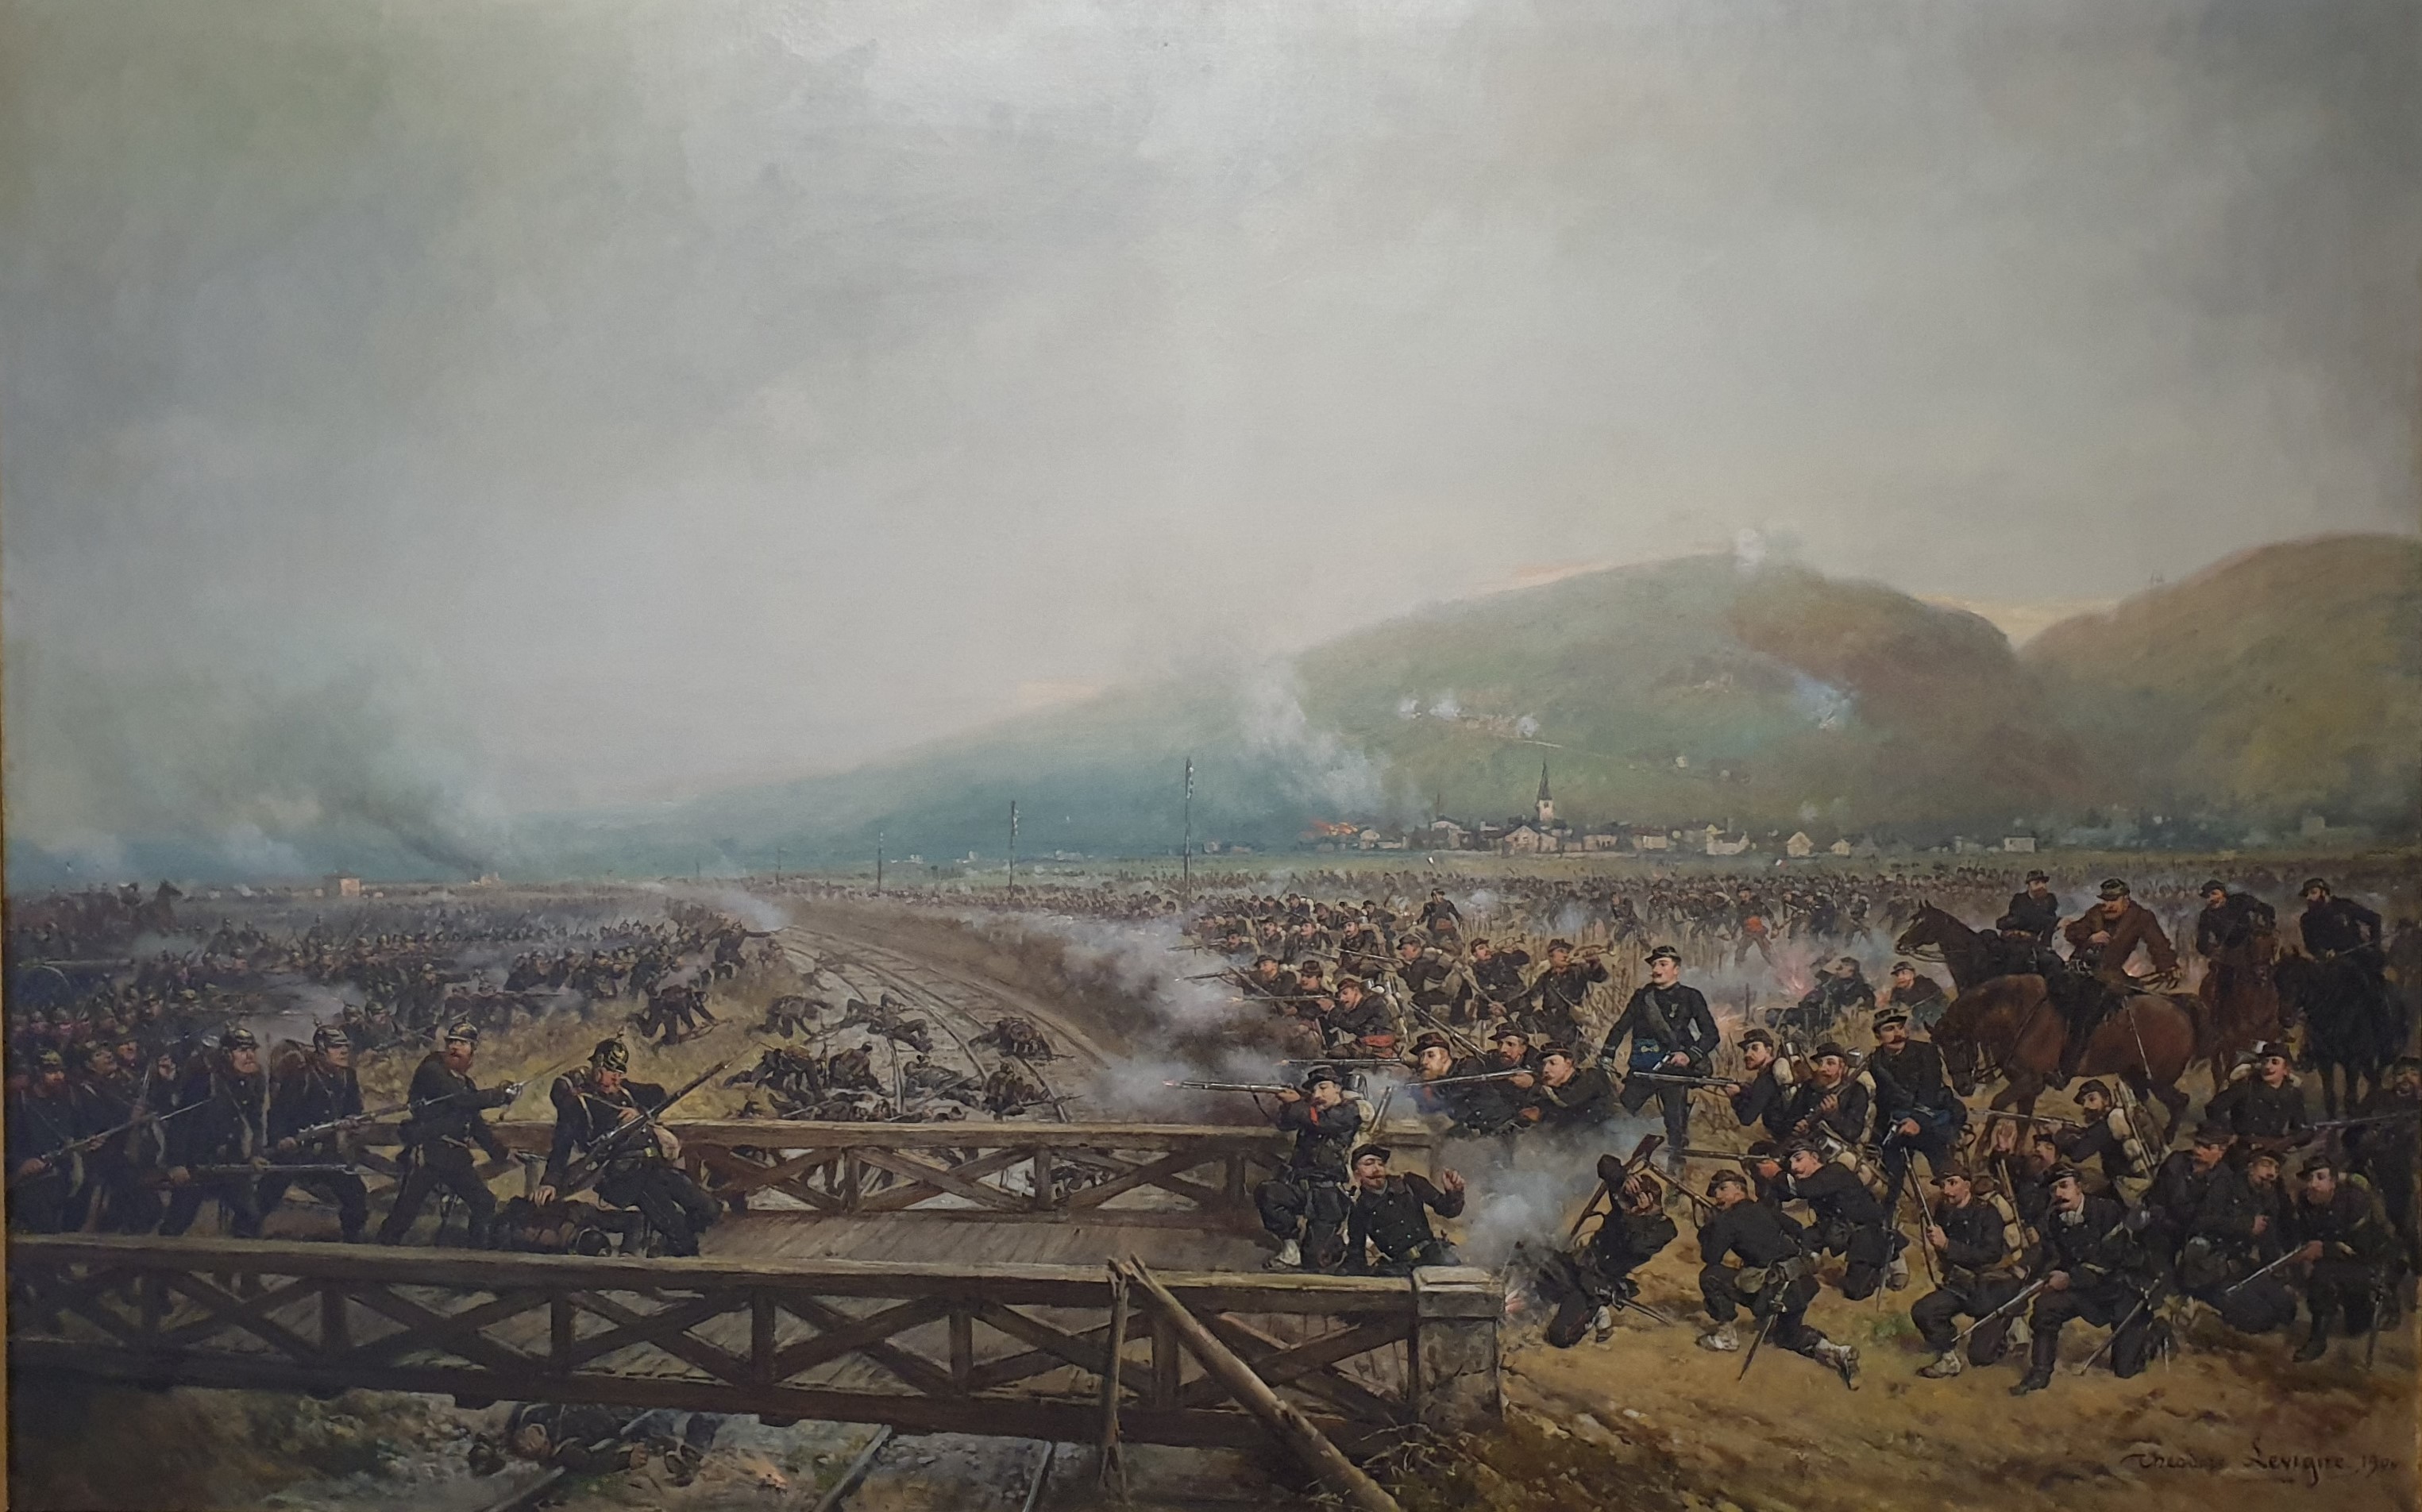 Un musée, une œuvre - Il y a 150 ans, la guerre de 1870